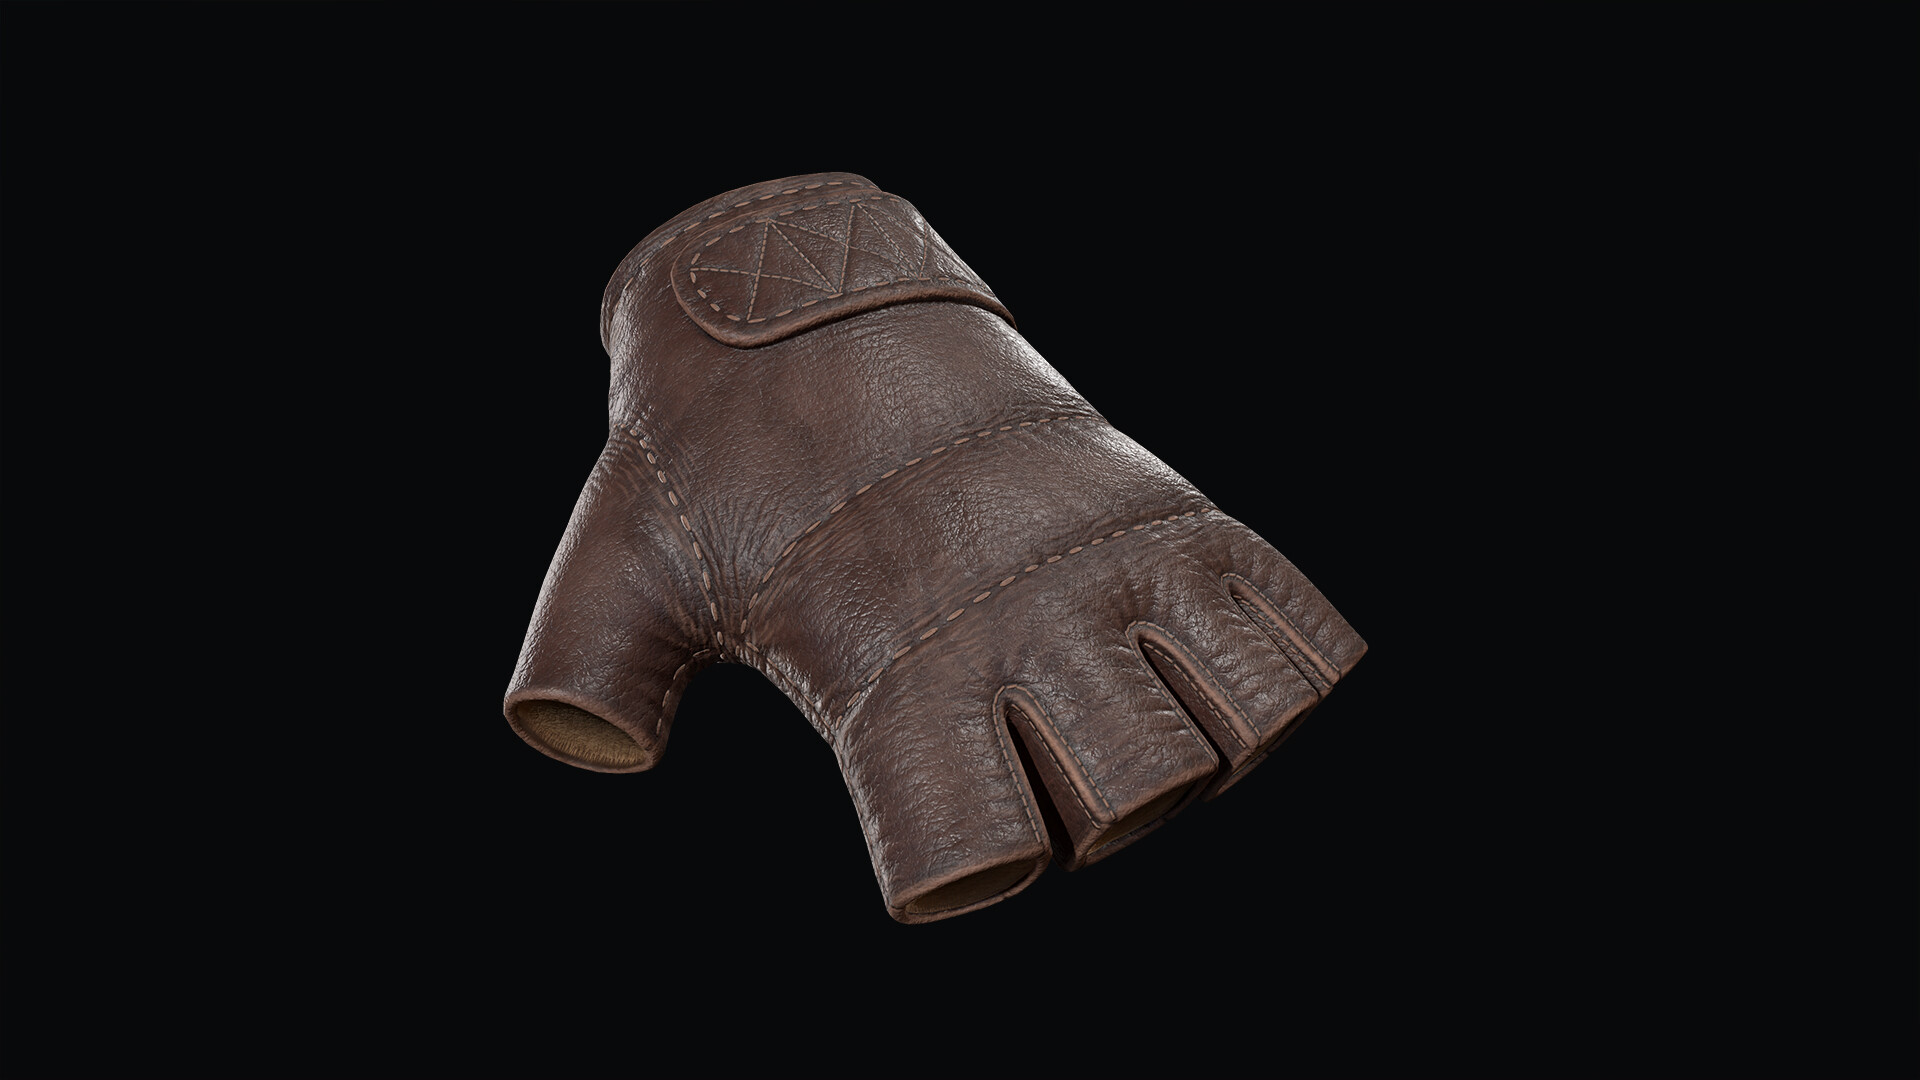 ArtStation - Fingerless leather glove